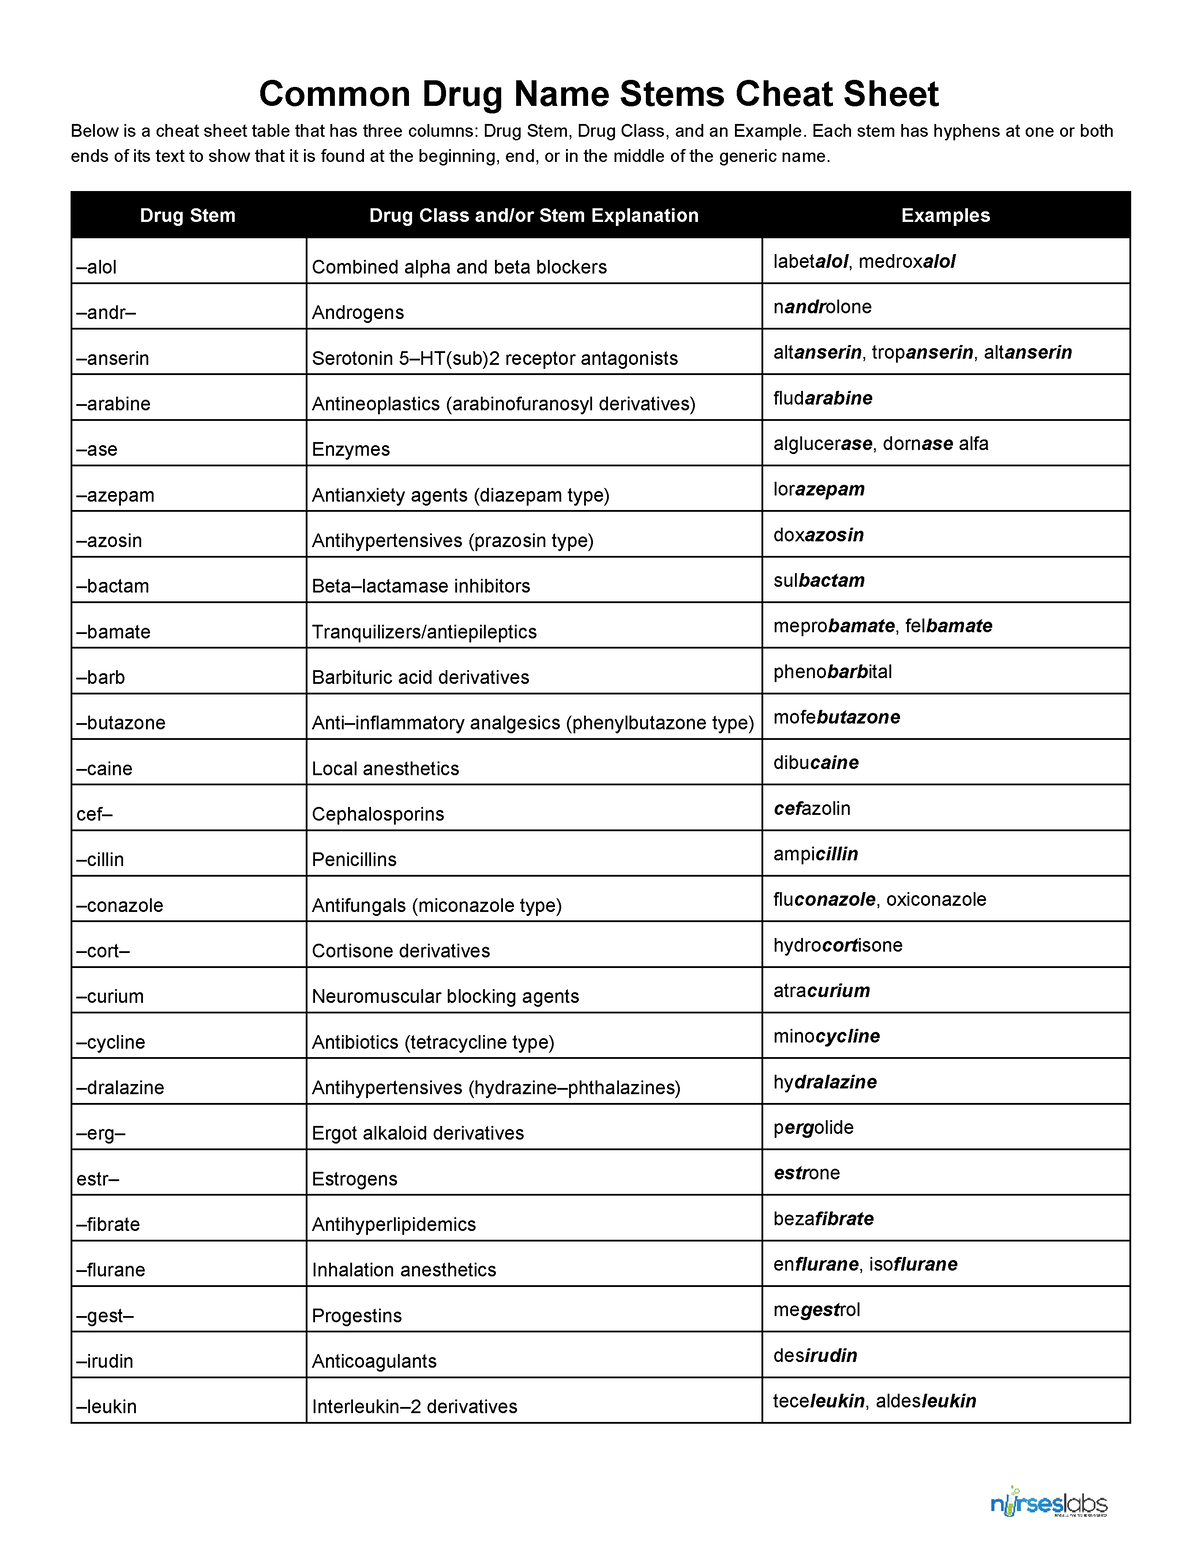 LVN Pharma Common Drug Stems Cheat Sheet 2 - Common Drug Name Stems ...